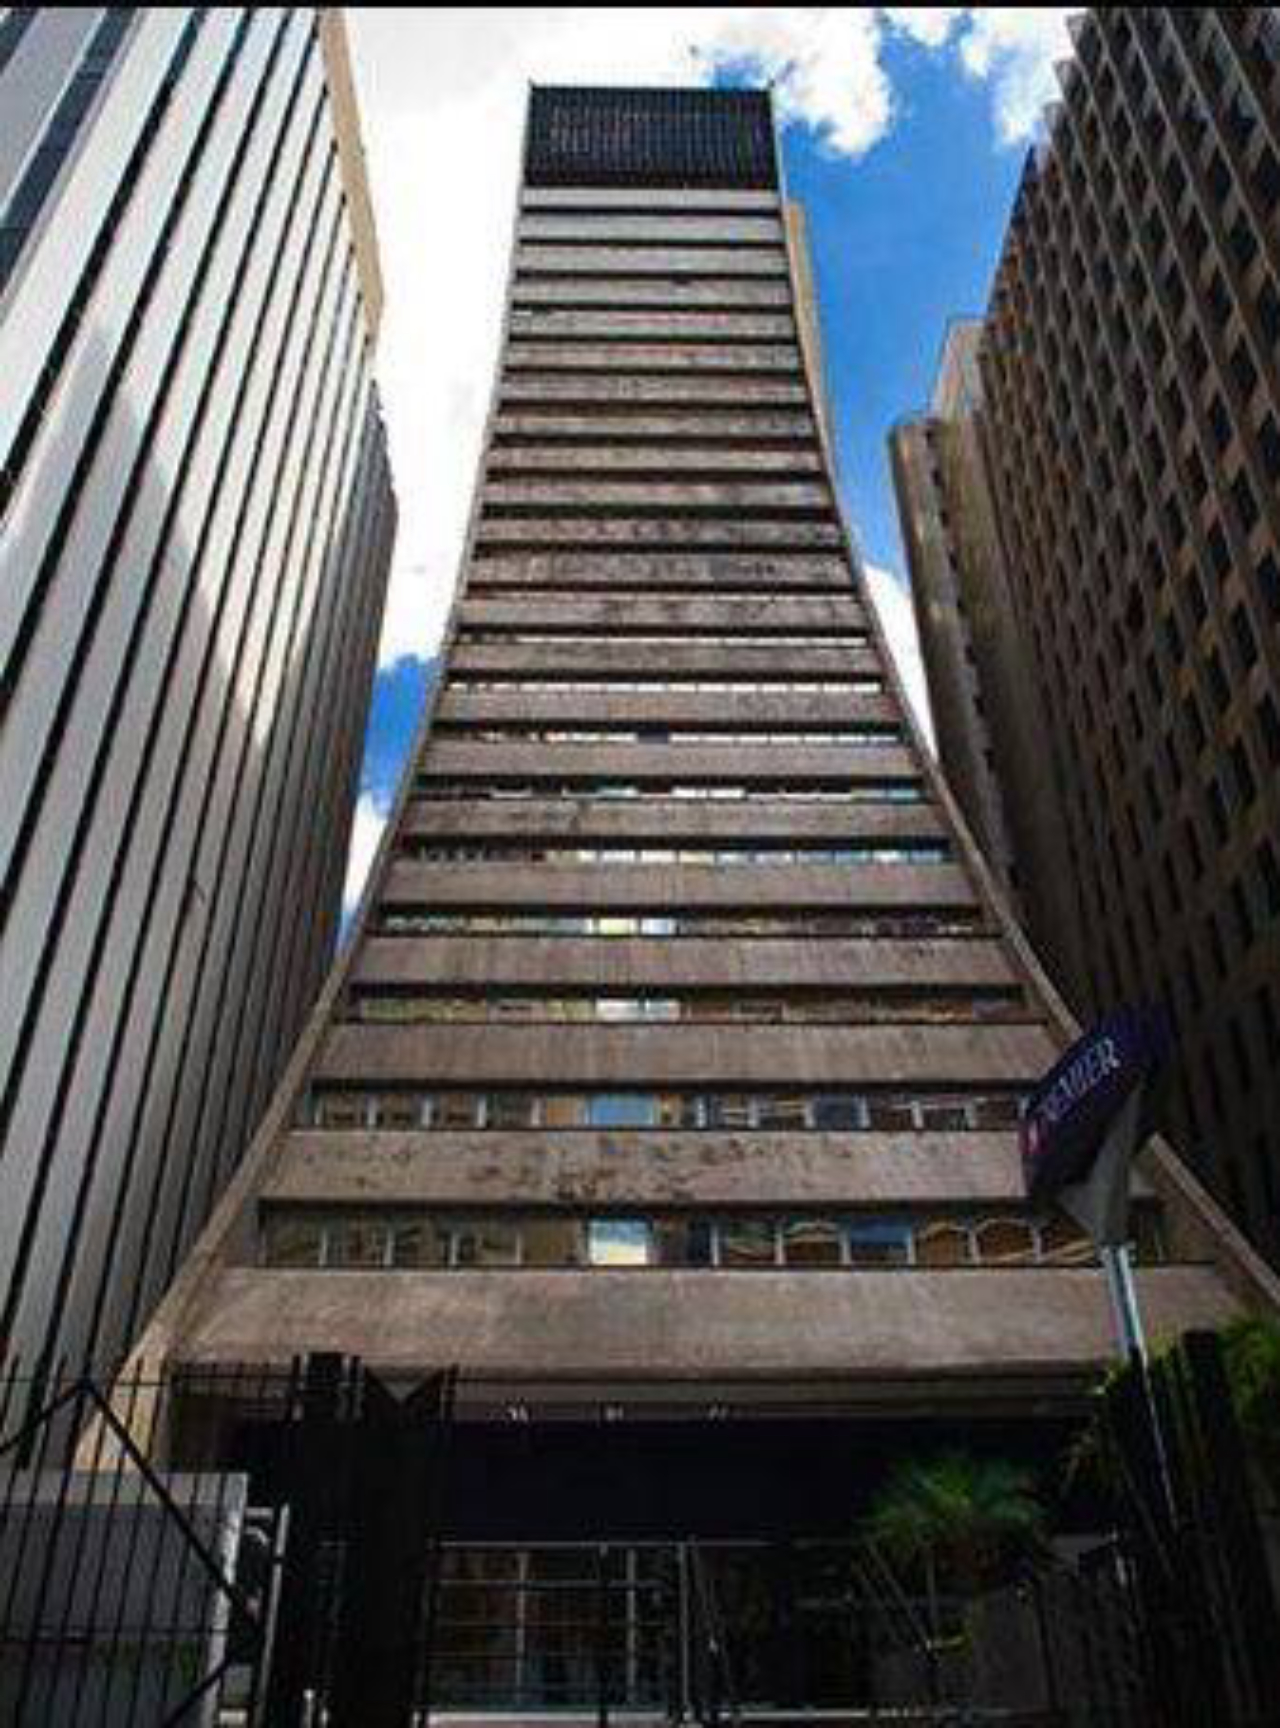  O Edifício Sumitomo, projetado por Jorge Zalszupin e pelo arquiteto José Gugliotta na década de 1970, na Avenida Paulista, em São Paulo. 